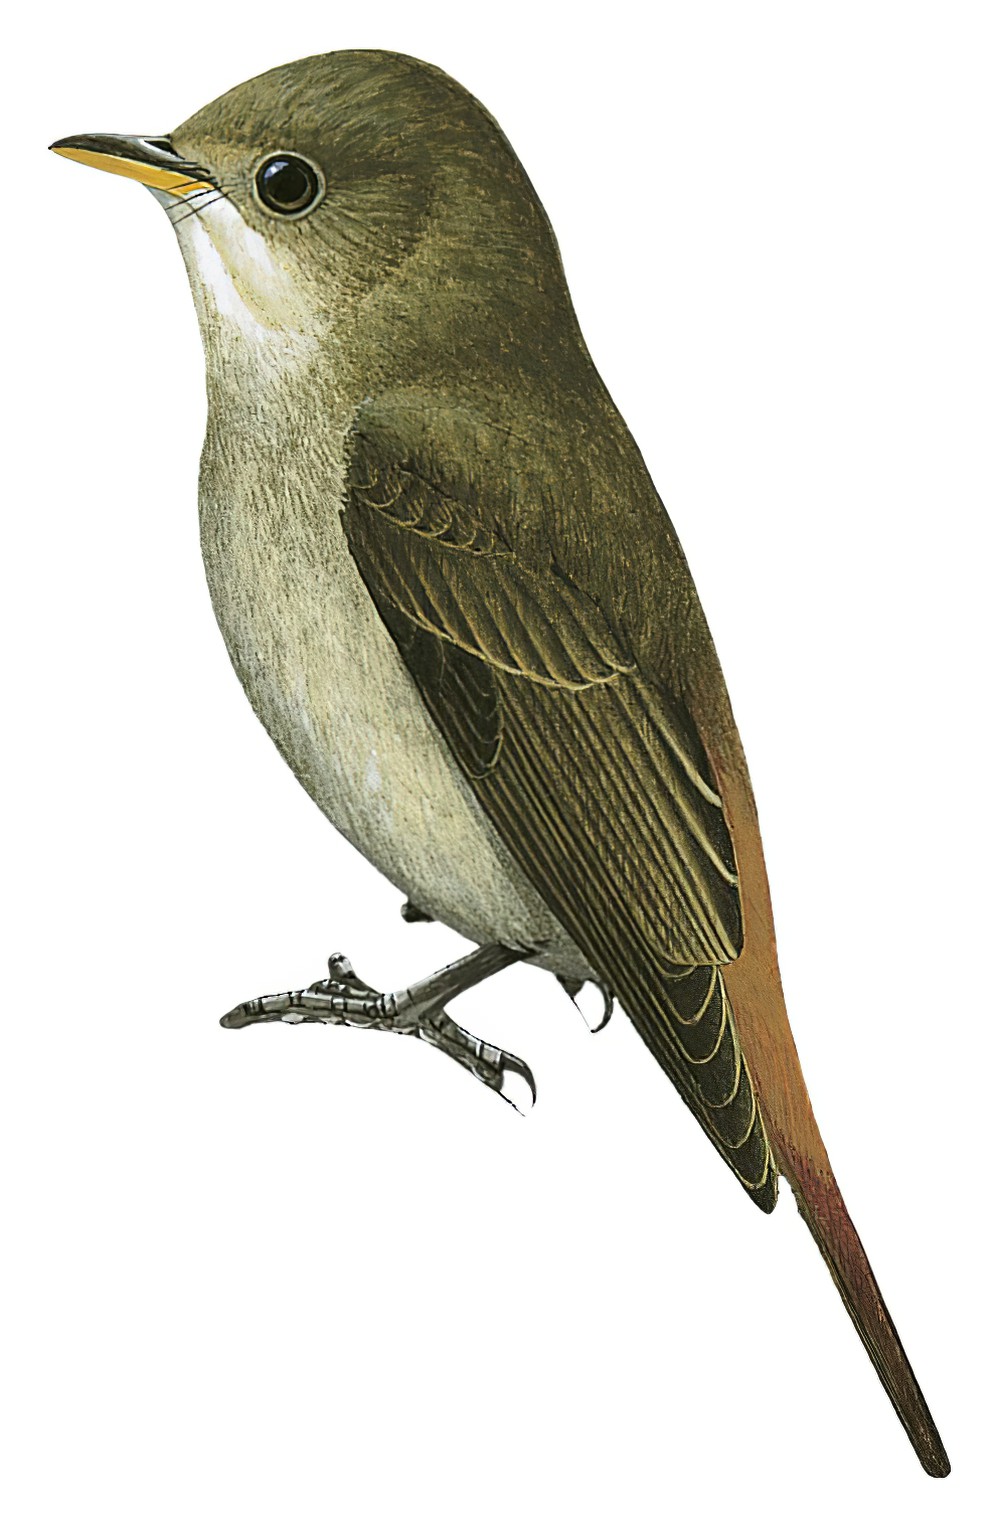 栗尾姬鹟 / Rusty-tailed Flycatcher / Ficedula ruficauda